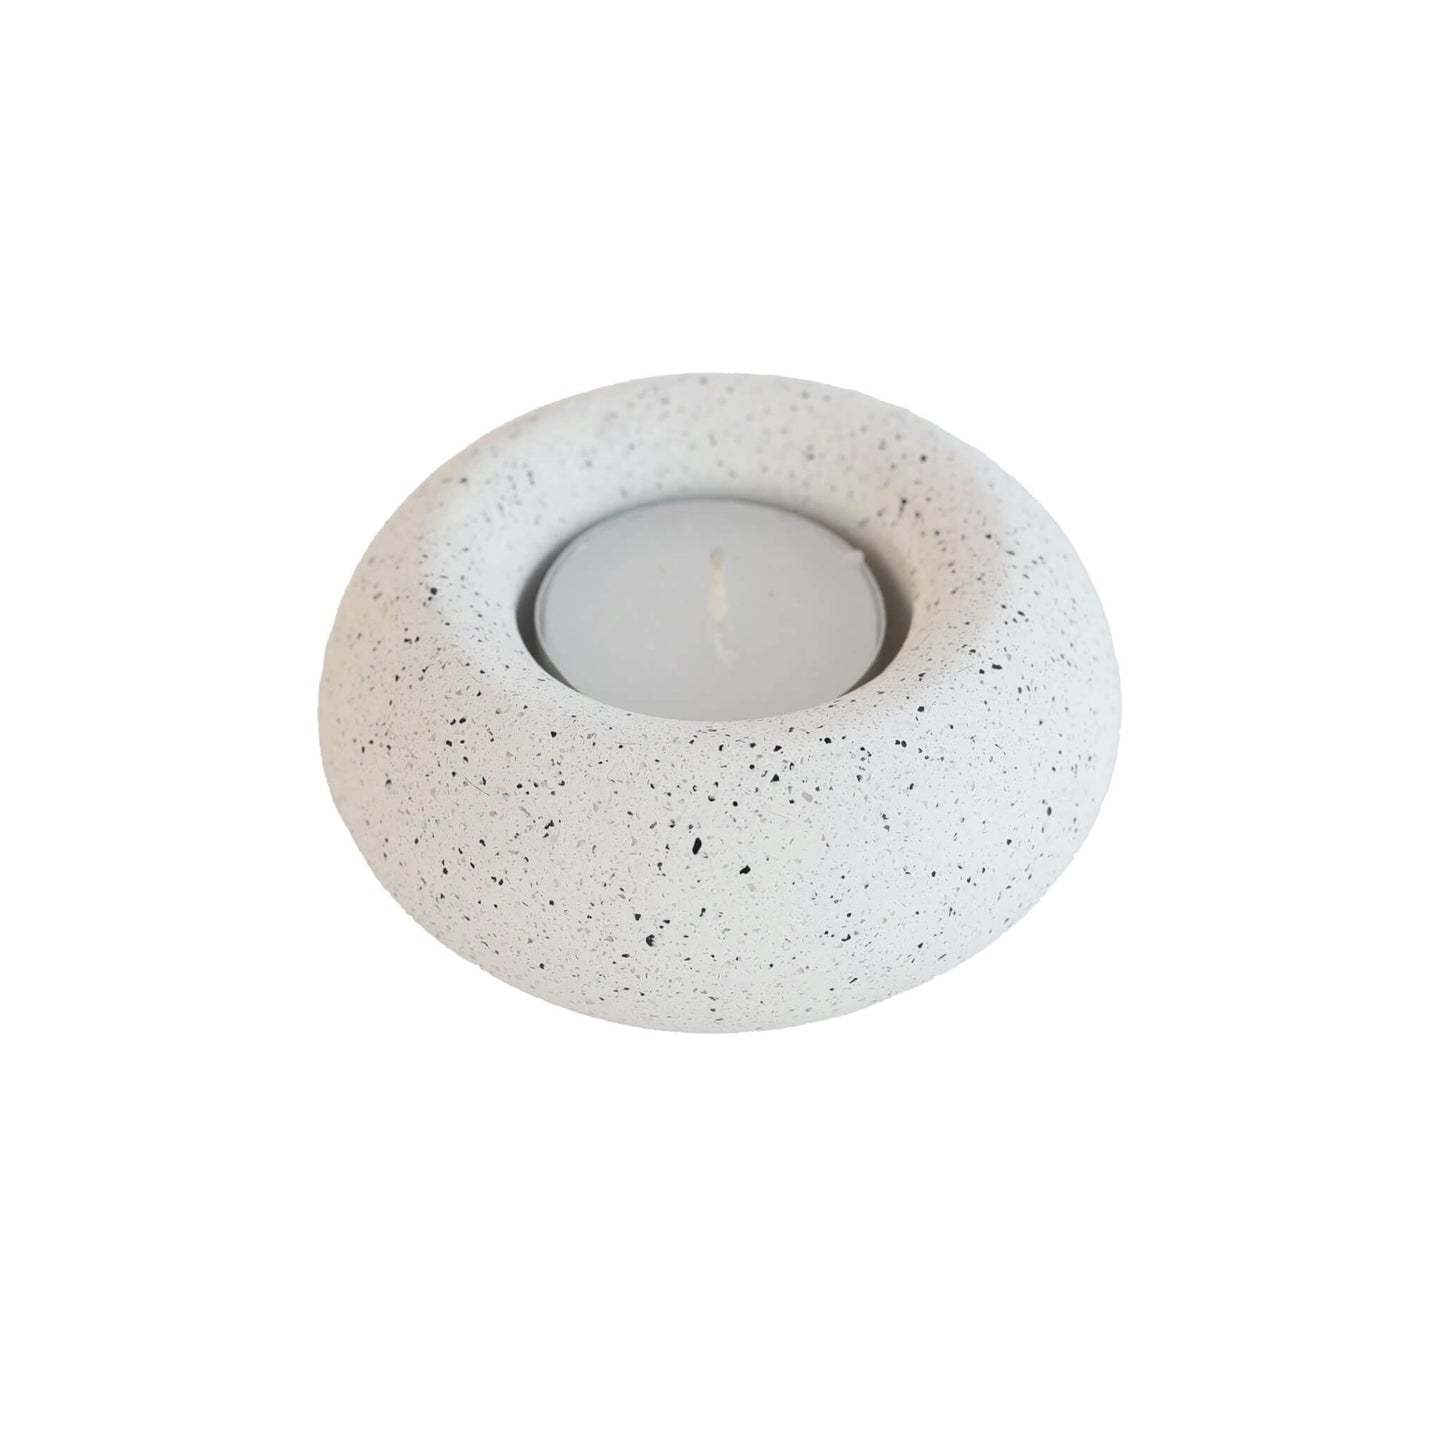 White Jesmonite Sunken Sphere Tealight Holder